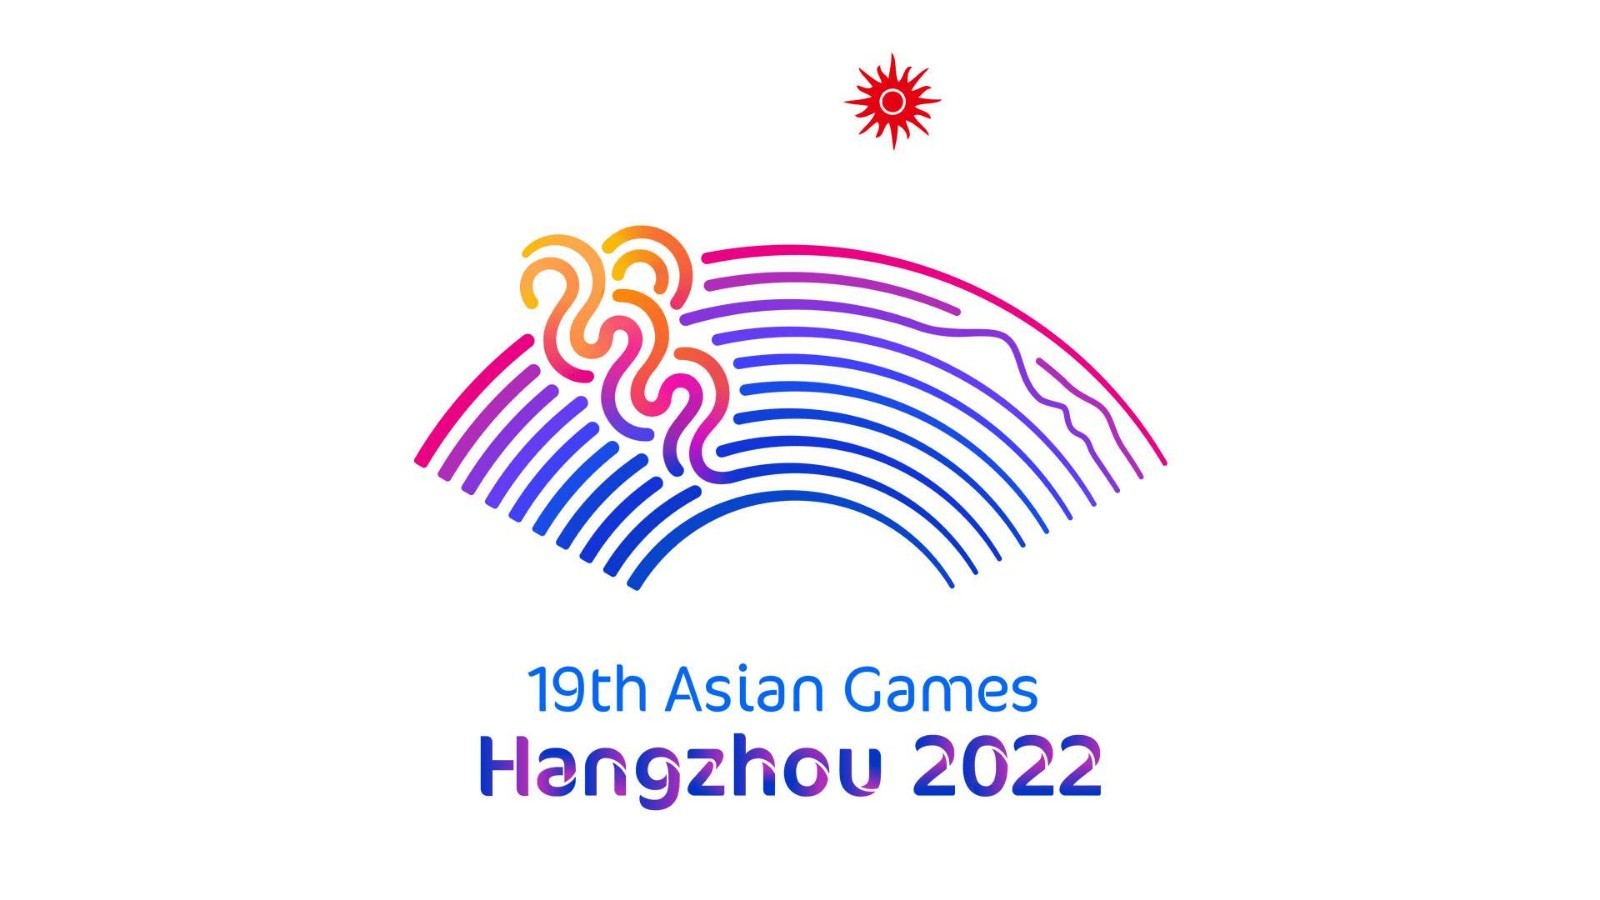 球王会:
杭州获2022年亚运会举办权投入或超1200多亿(图)